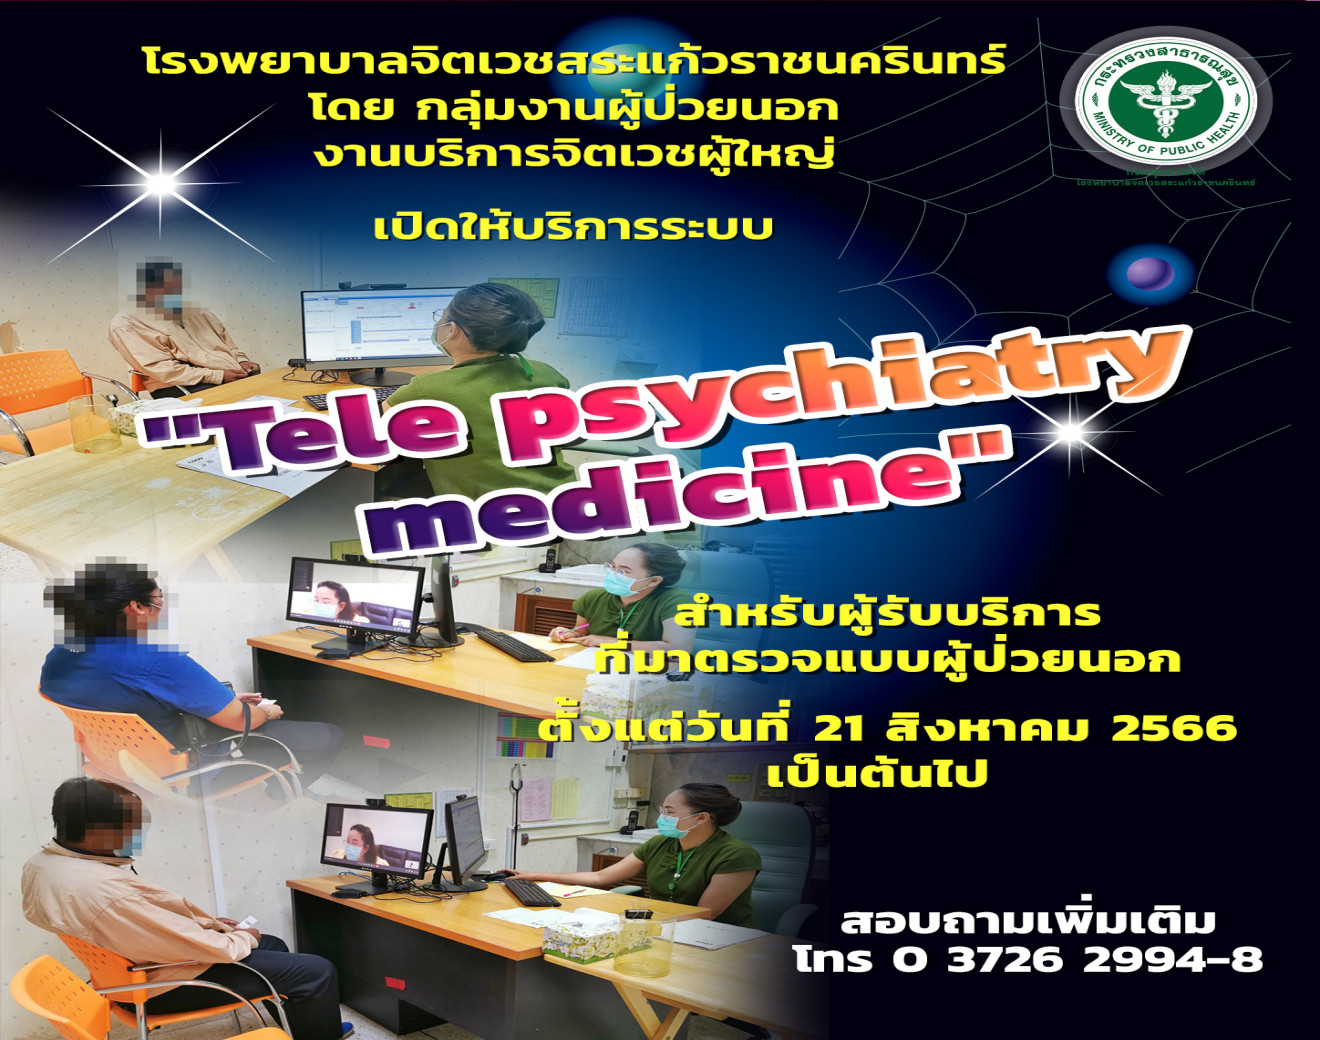 เปิดระบบบริการ Tele psychiatry medicine